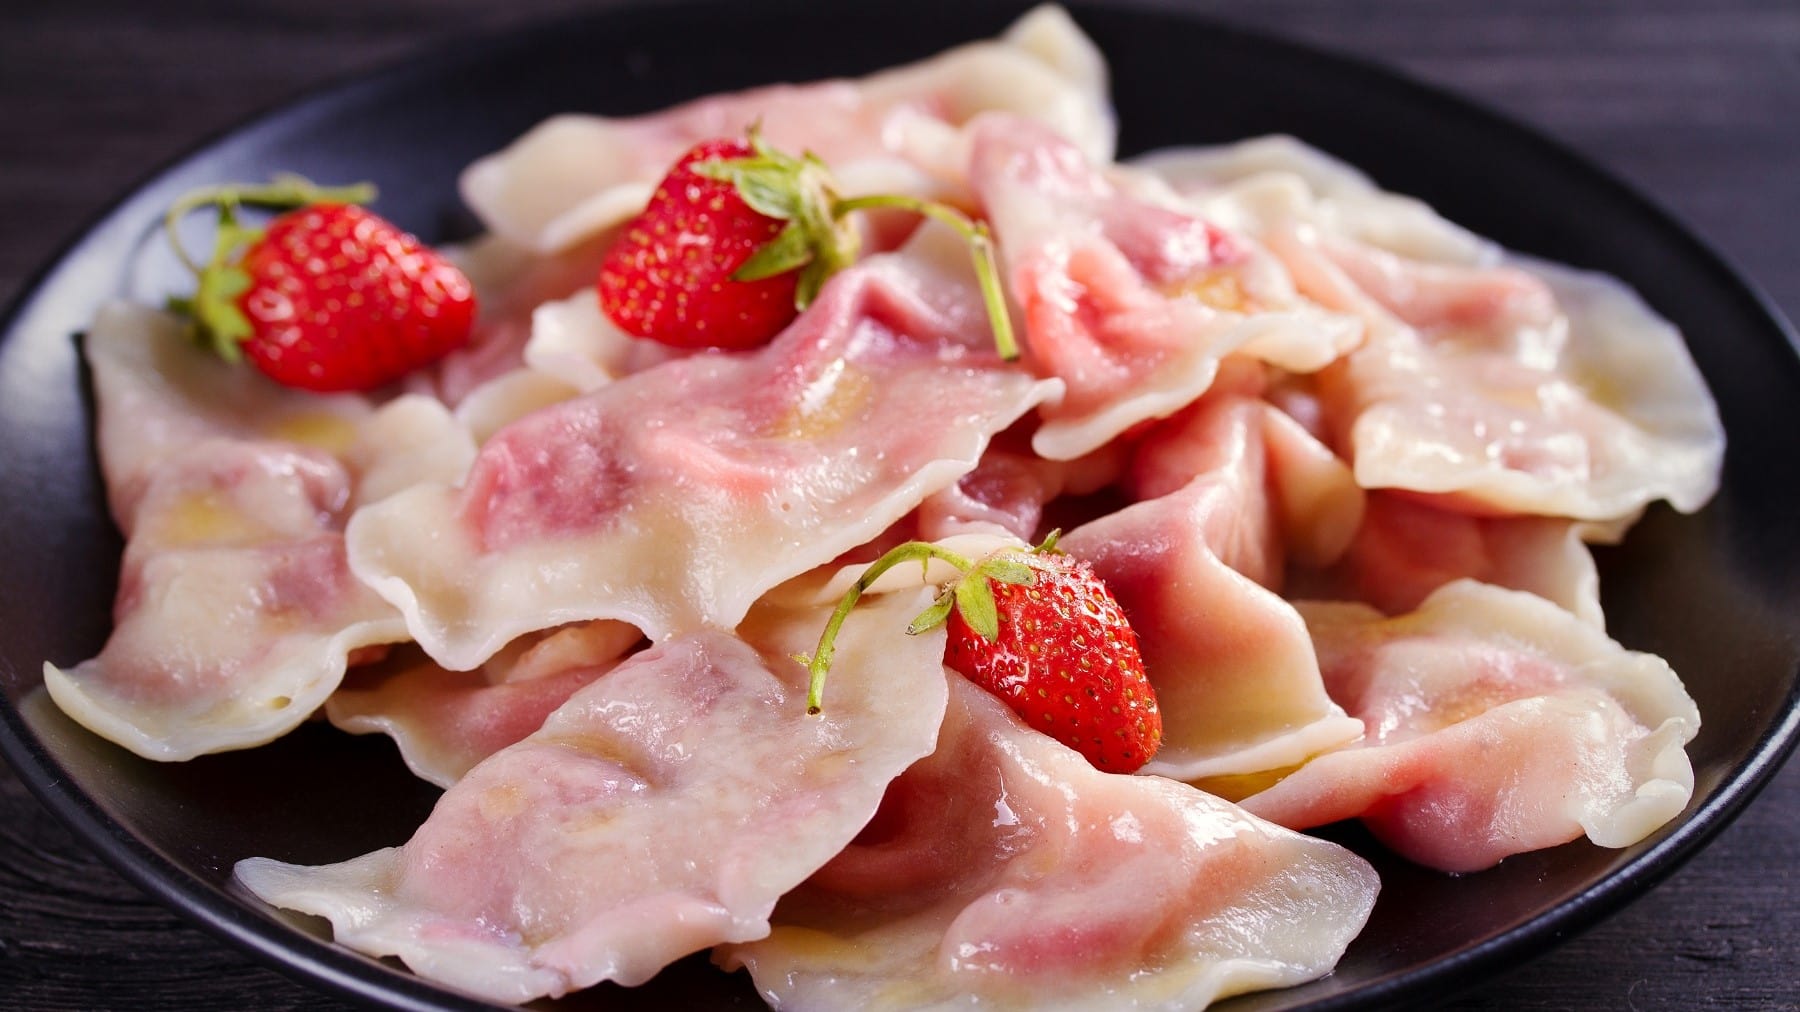 Fruchtig gefüllte Pierogi mit Erdbeerfüllung, ausgekocht und serviert auf einem dunklen Teller, garniert mit frischen Erdbeeren.